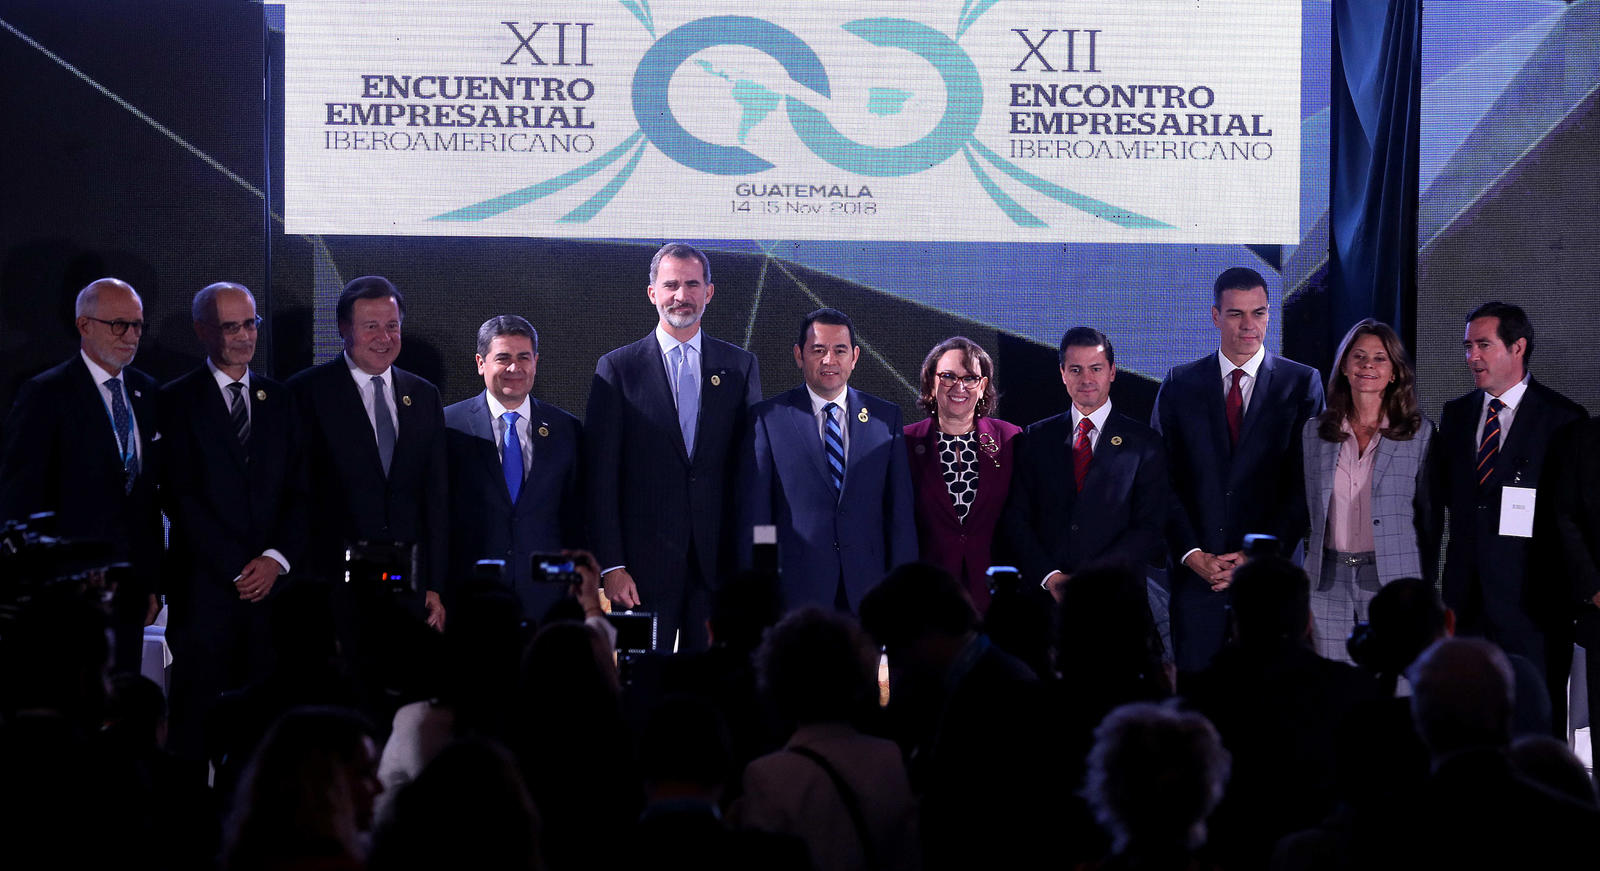 Presentes. Gobernantes externan sus puntos de vista para impulsar el desarrollo regional, durante el XII Encuentro Empresarial Iberoamericano.